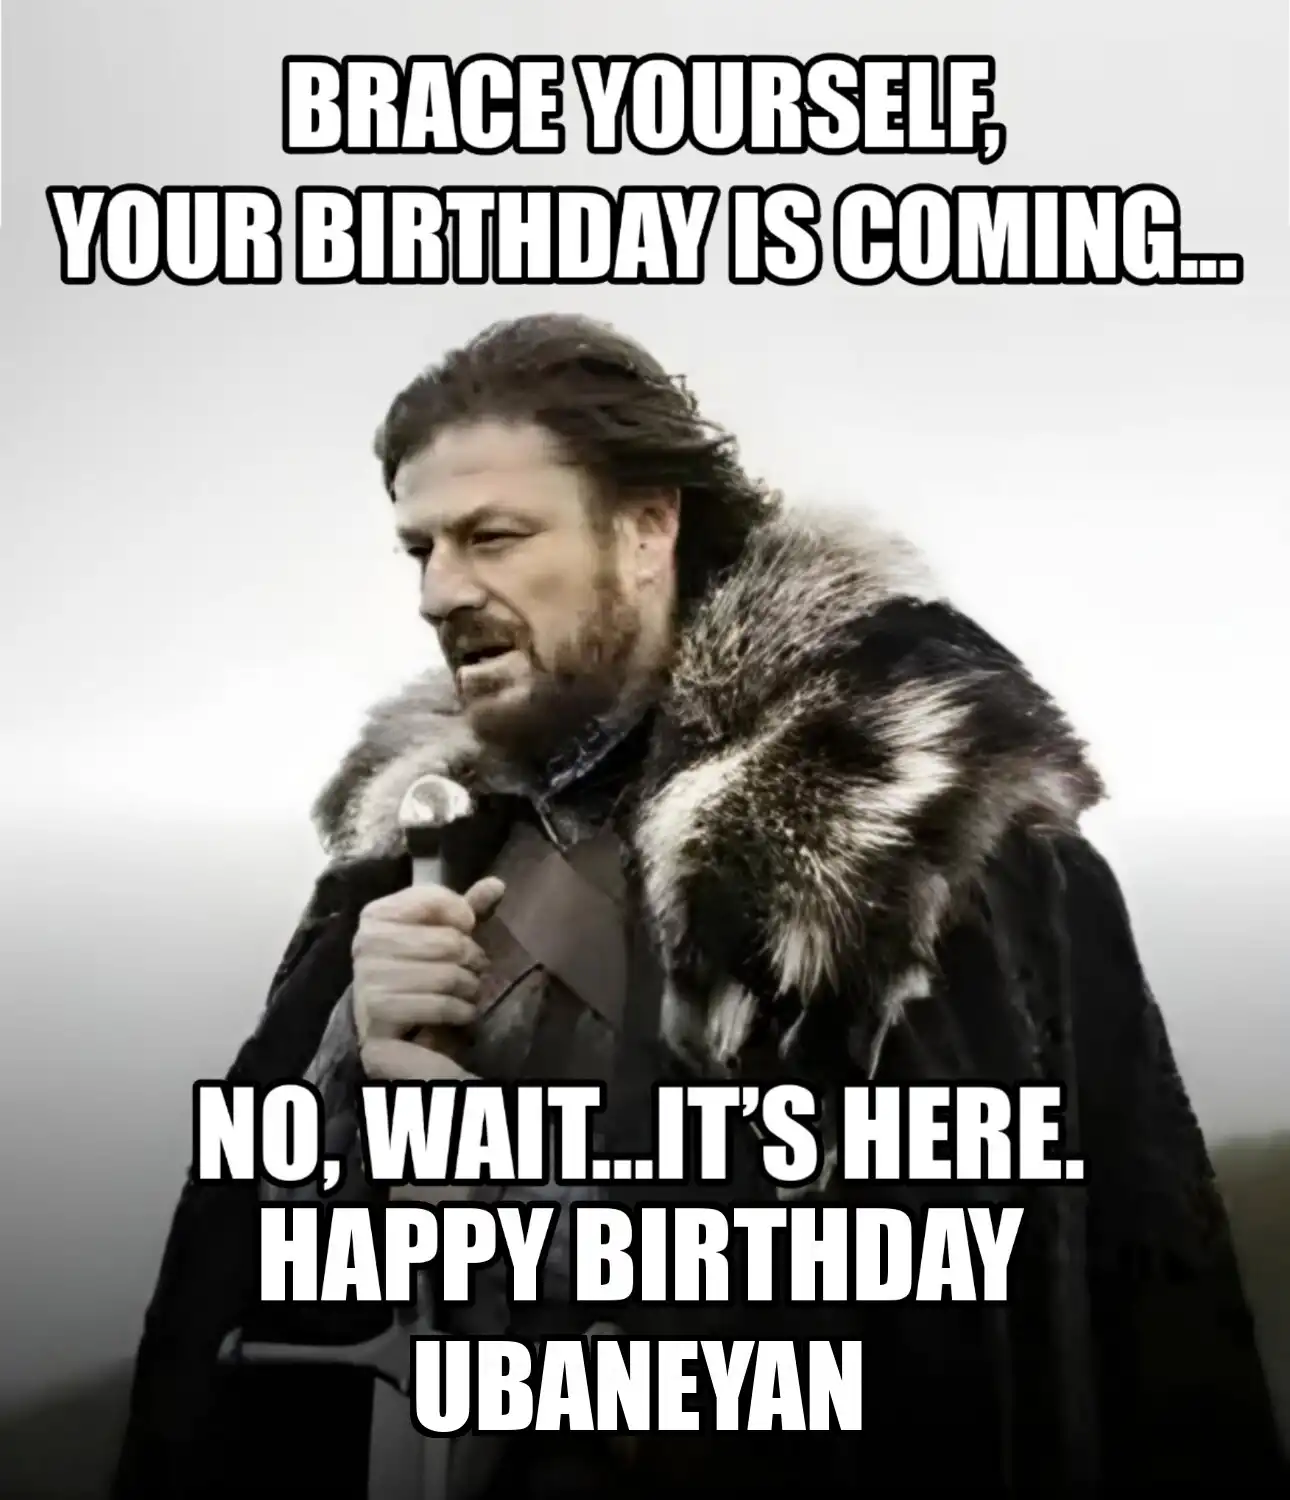 Happy Birthday Ubaneyan Brace Yourself Your Birthday Is Coming Meme